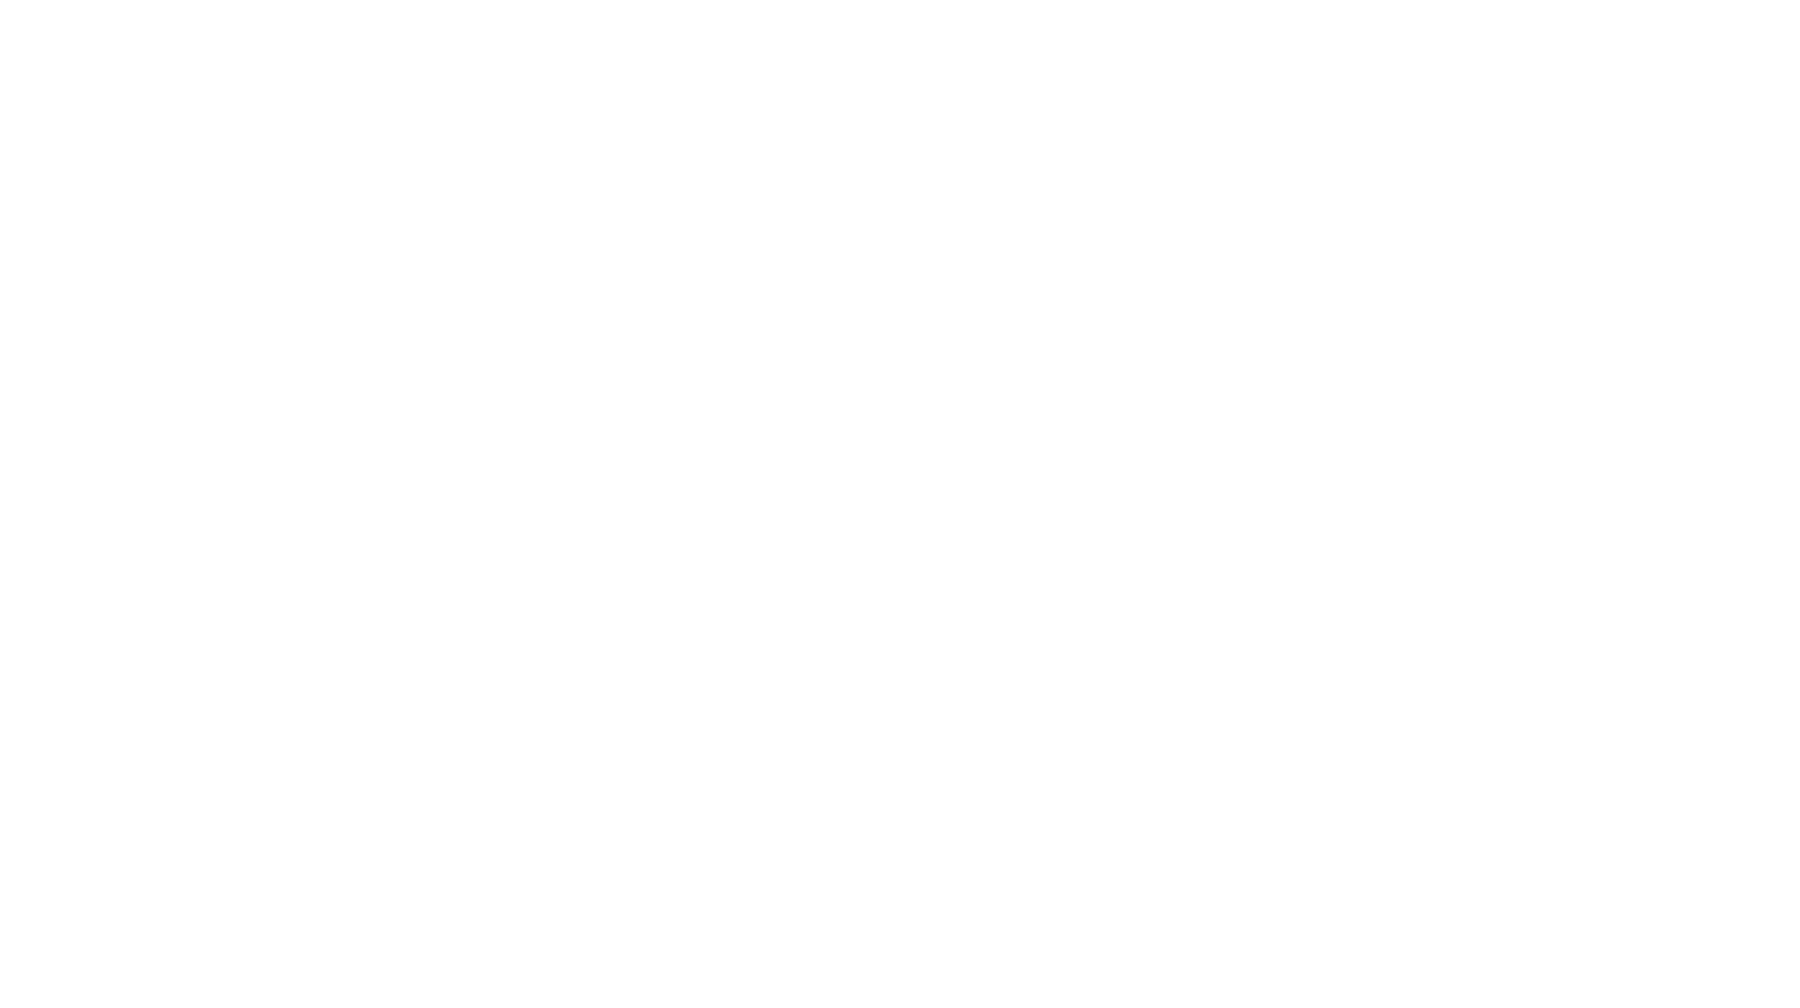 Total Entertainment by Matt Winter